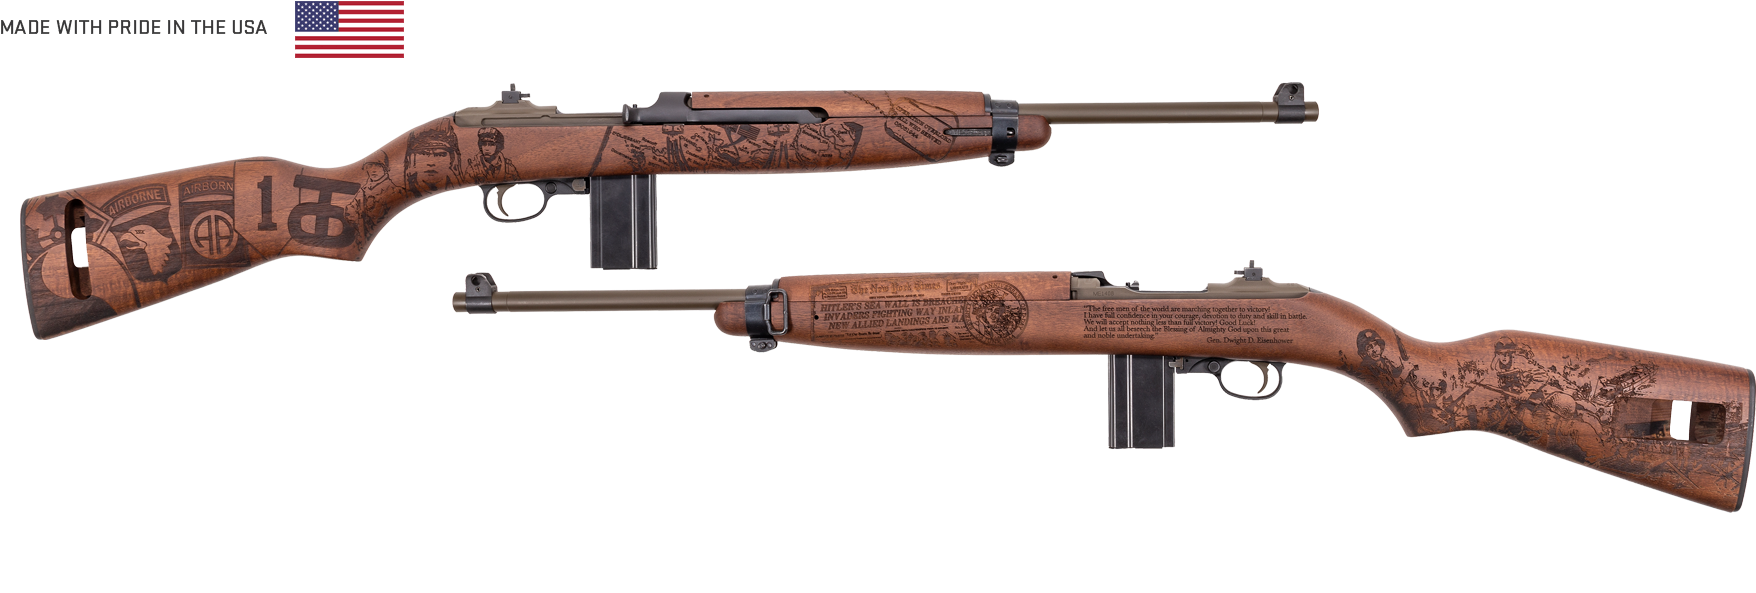 Soldier M1 Carbine M1 Carbine Rifle